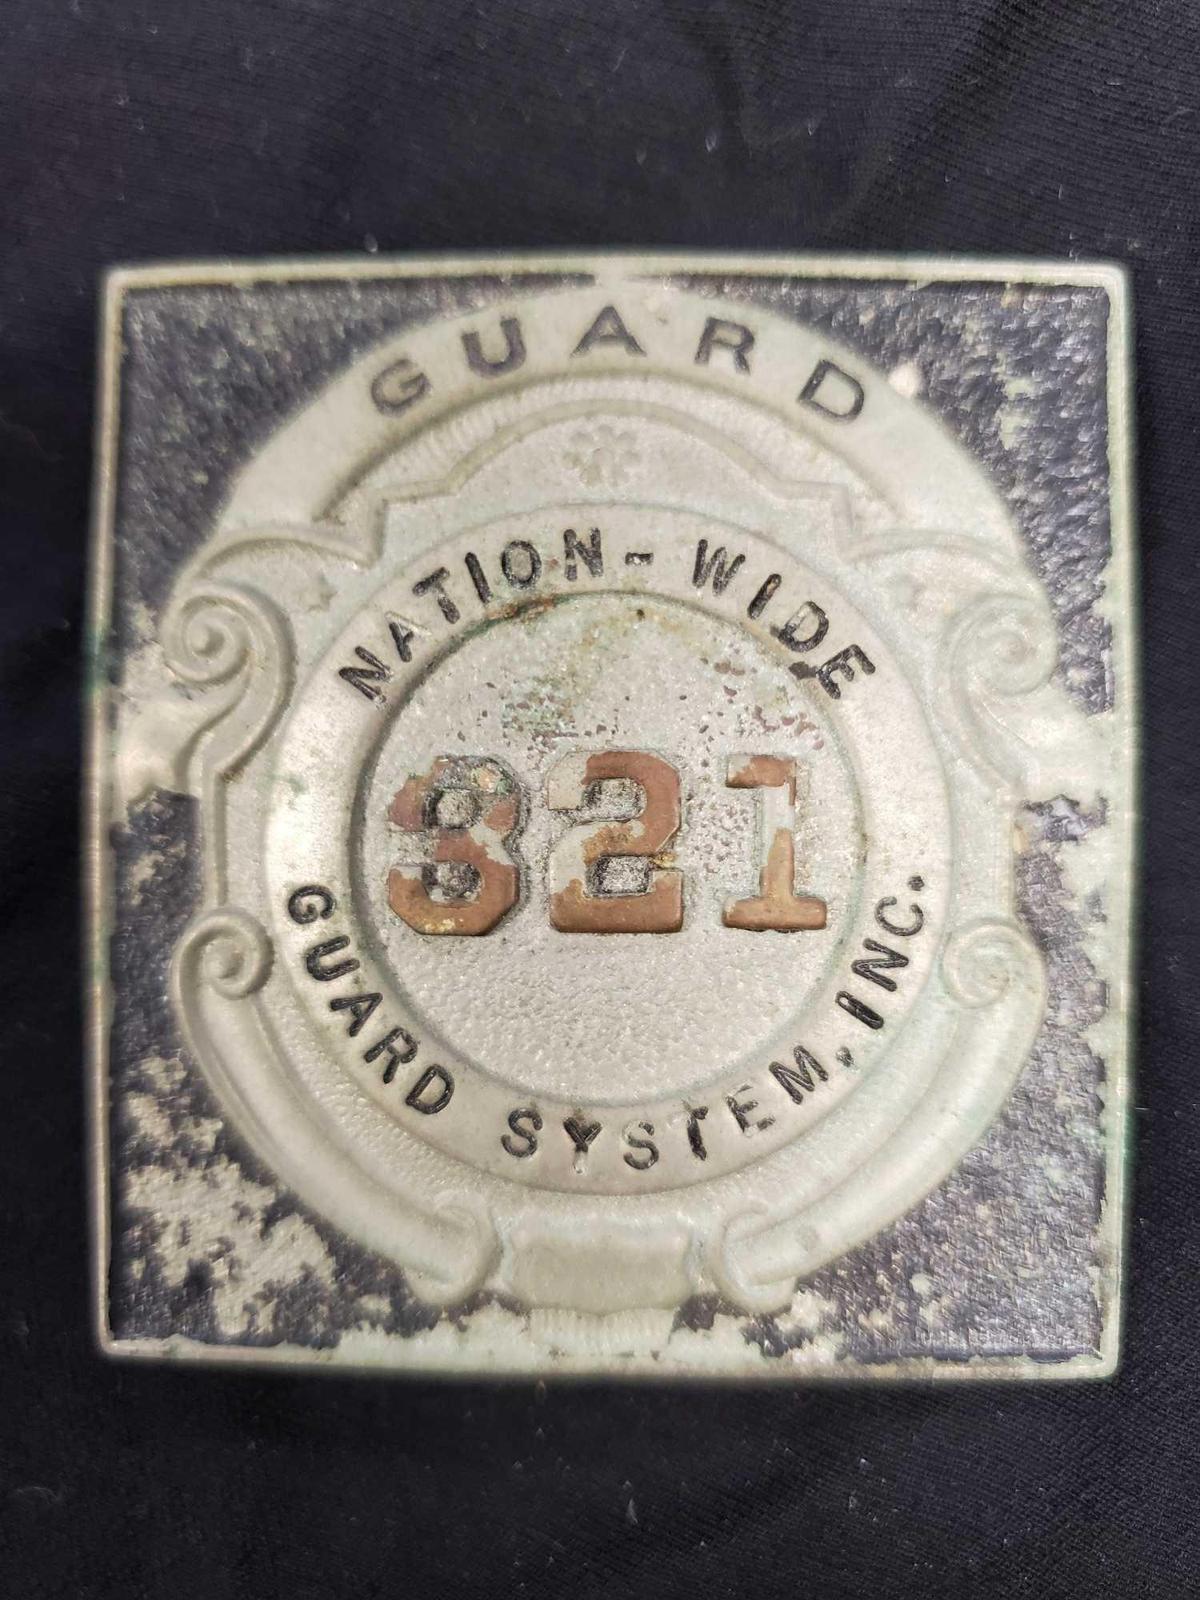 Vintage Badge - #321 GUARD Nation-Wide Guard System, Inc